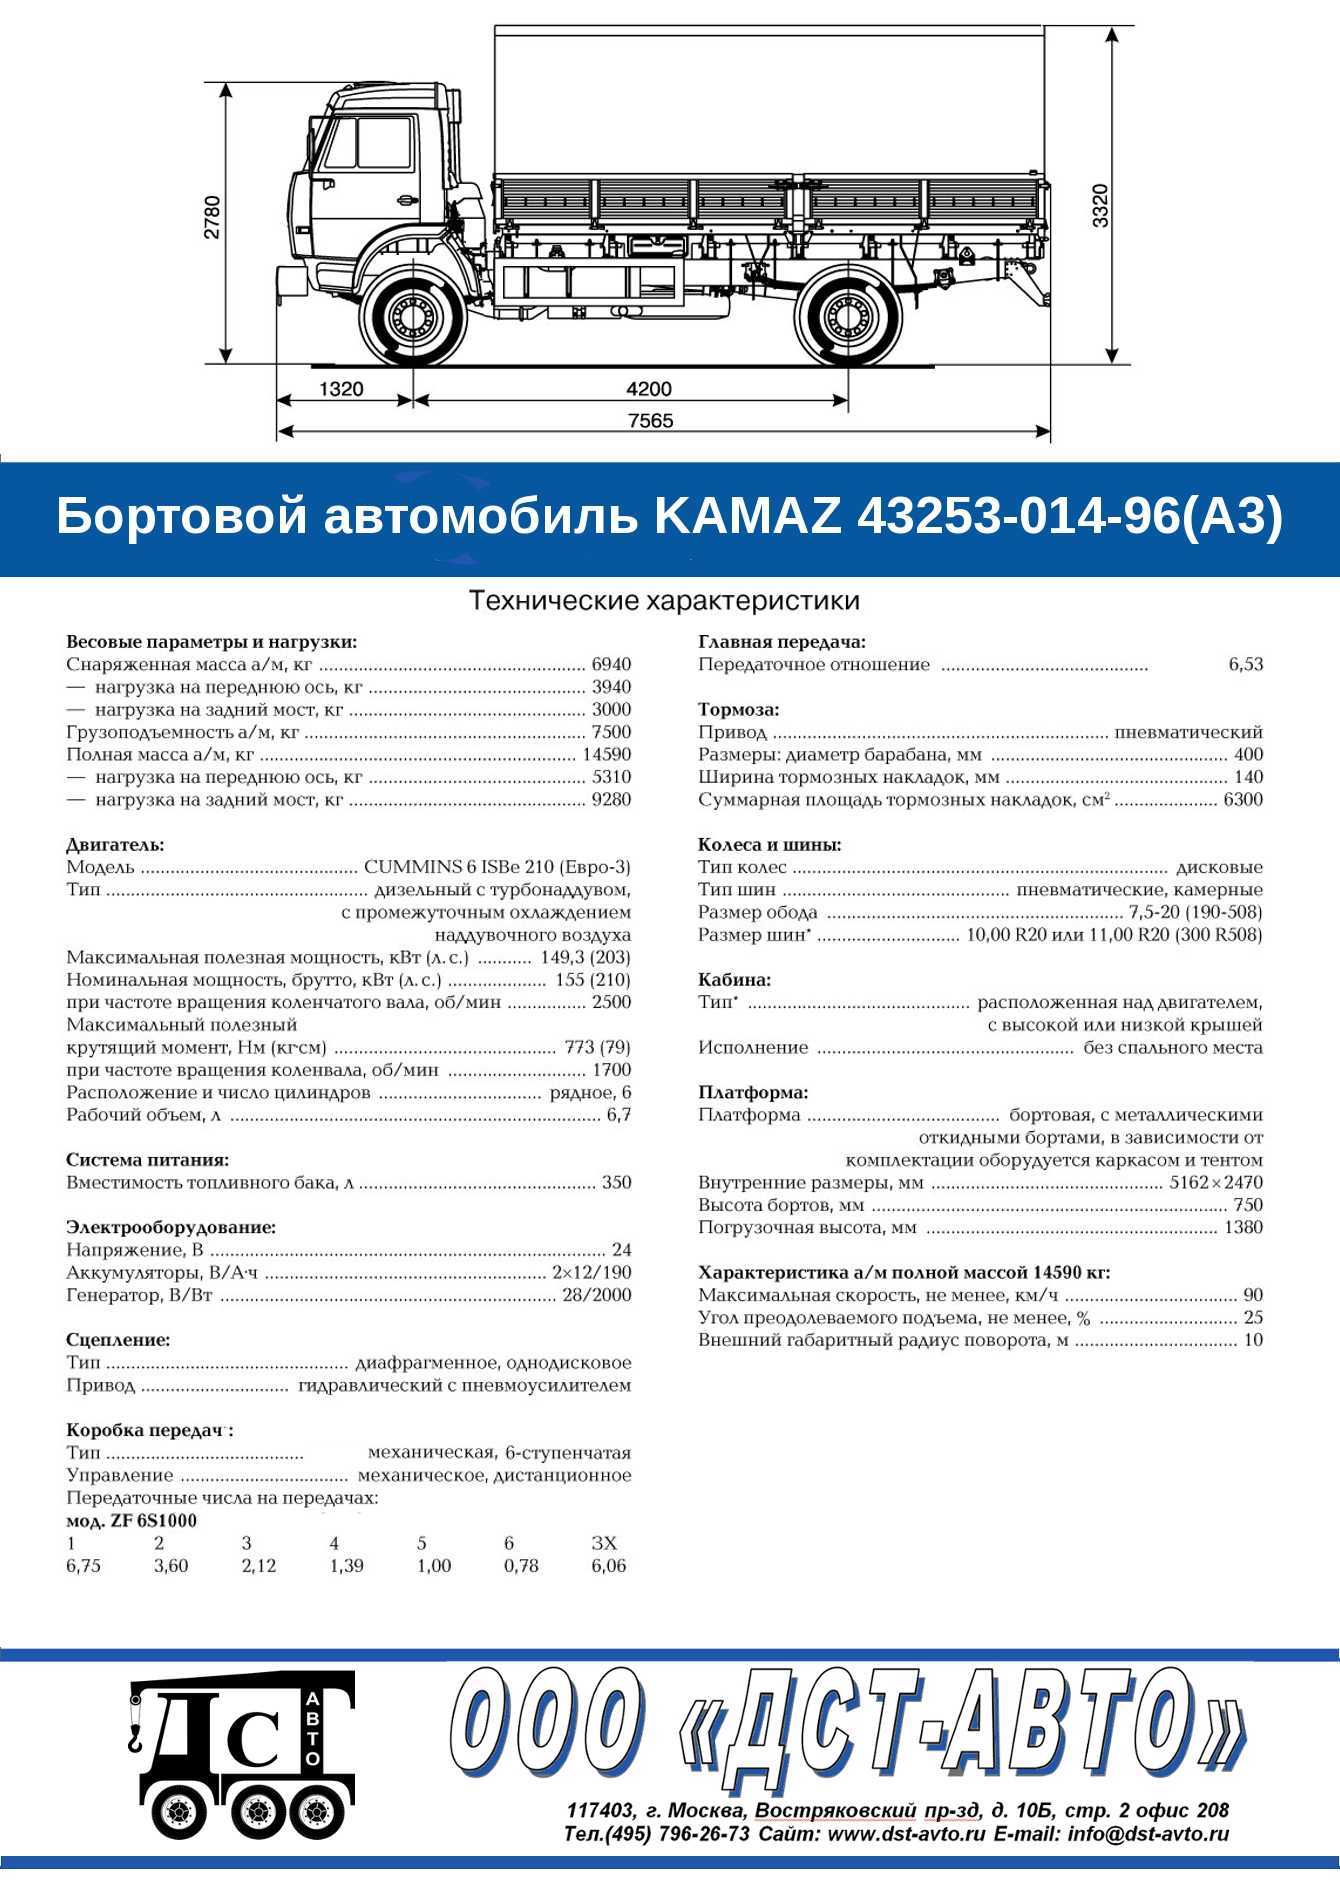 КамАЗ-43253 - это двухосный грузовой автомобиль с колёсной формулой 4х2, с 2010 года выпускаемый Камским автомобильным заводом в вариантах бортовой и универсальное шасси Является усовершенствованным вариантом грузовика КамАЗ-4325, от которого отличается н